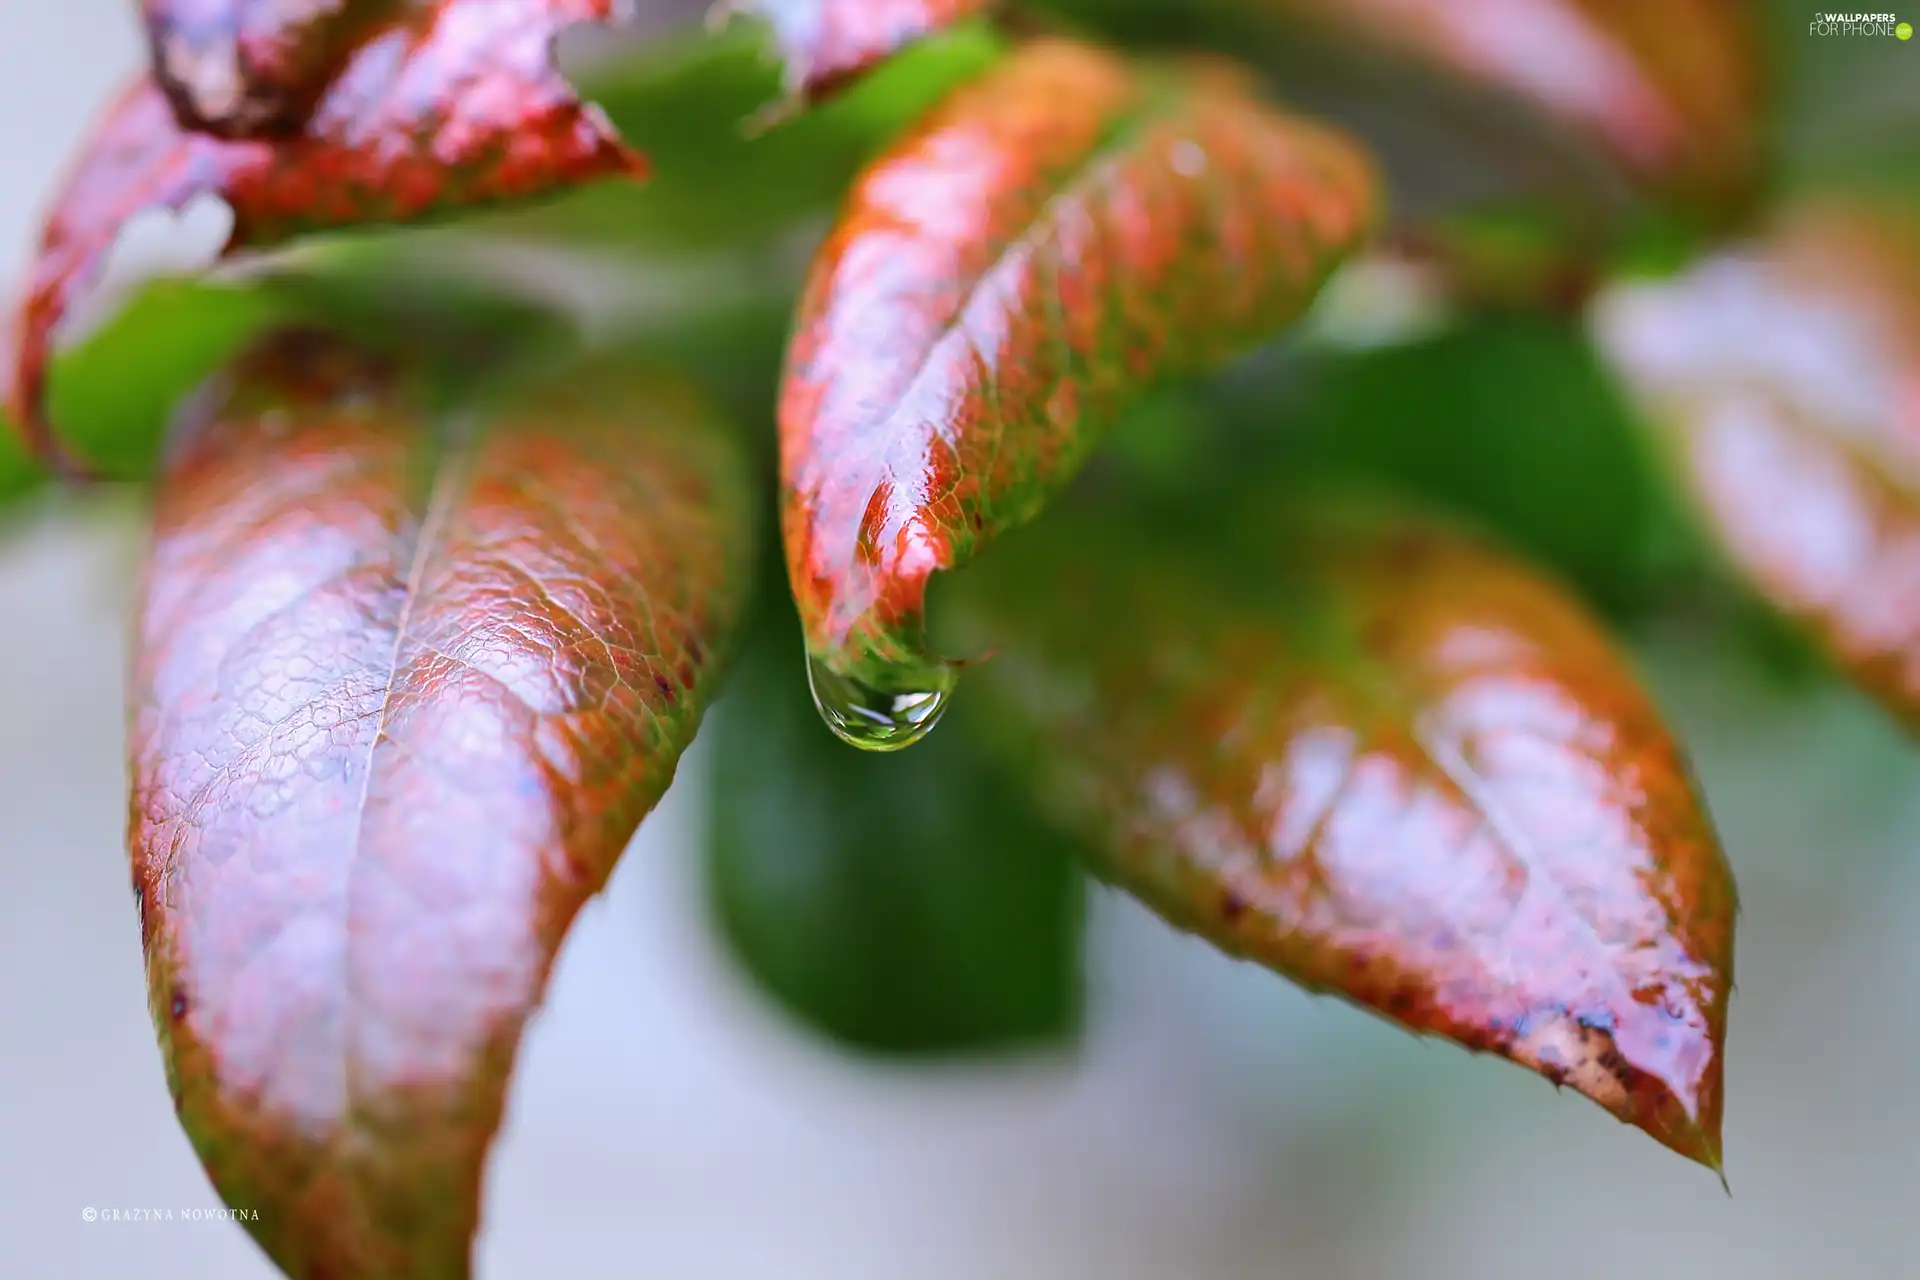 Leaf, drop, plant, wet